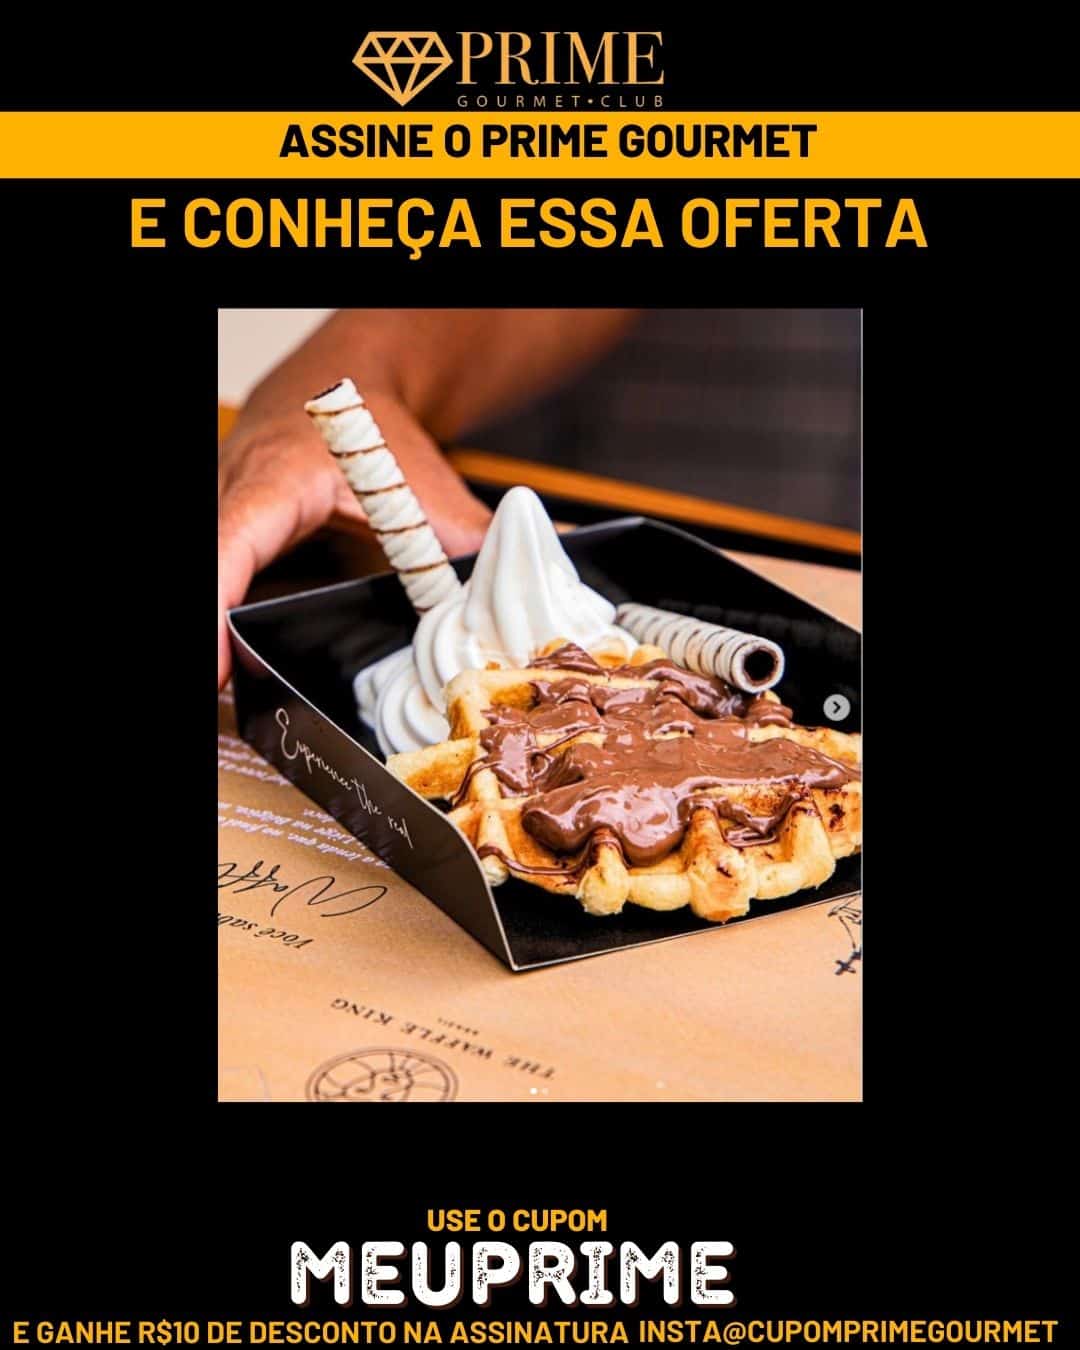 Prime Gourmet Club Campos do Jordão - Restaurante Vivaah Waffle King